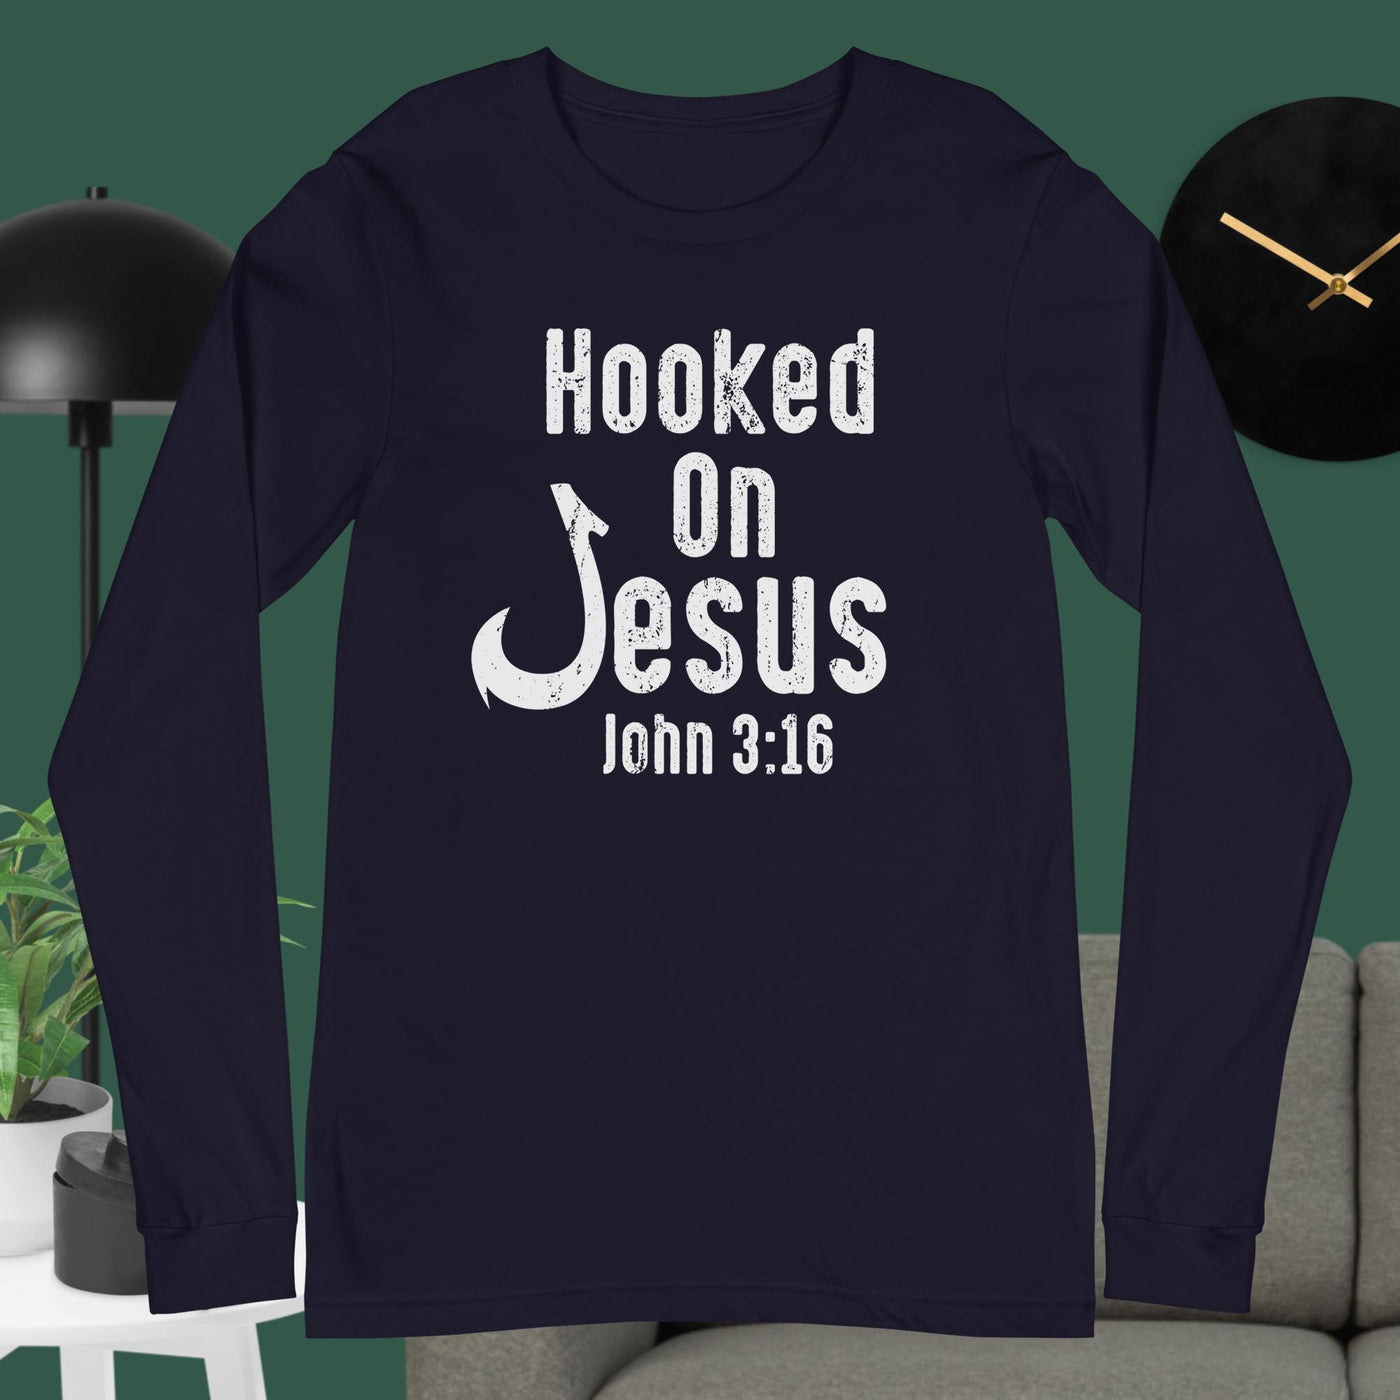 F&H Hooked On Jesus Long Sleeve Tee